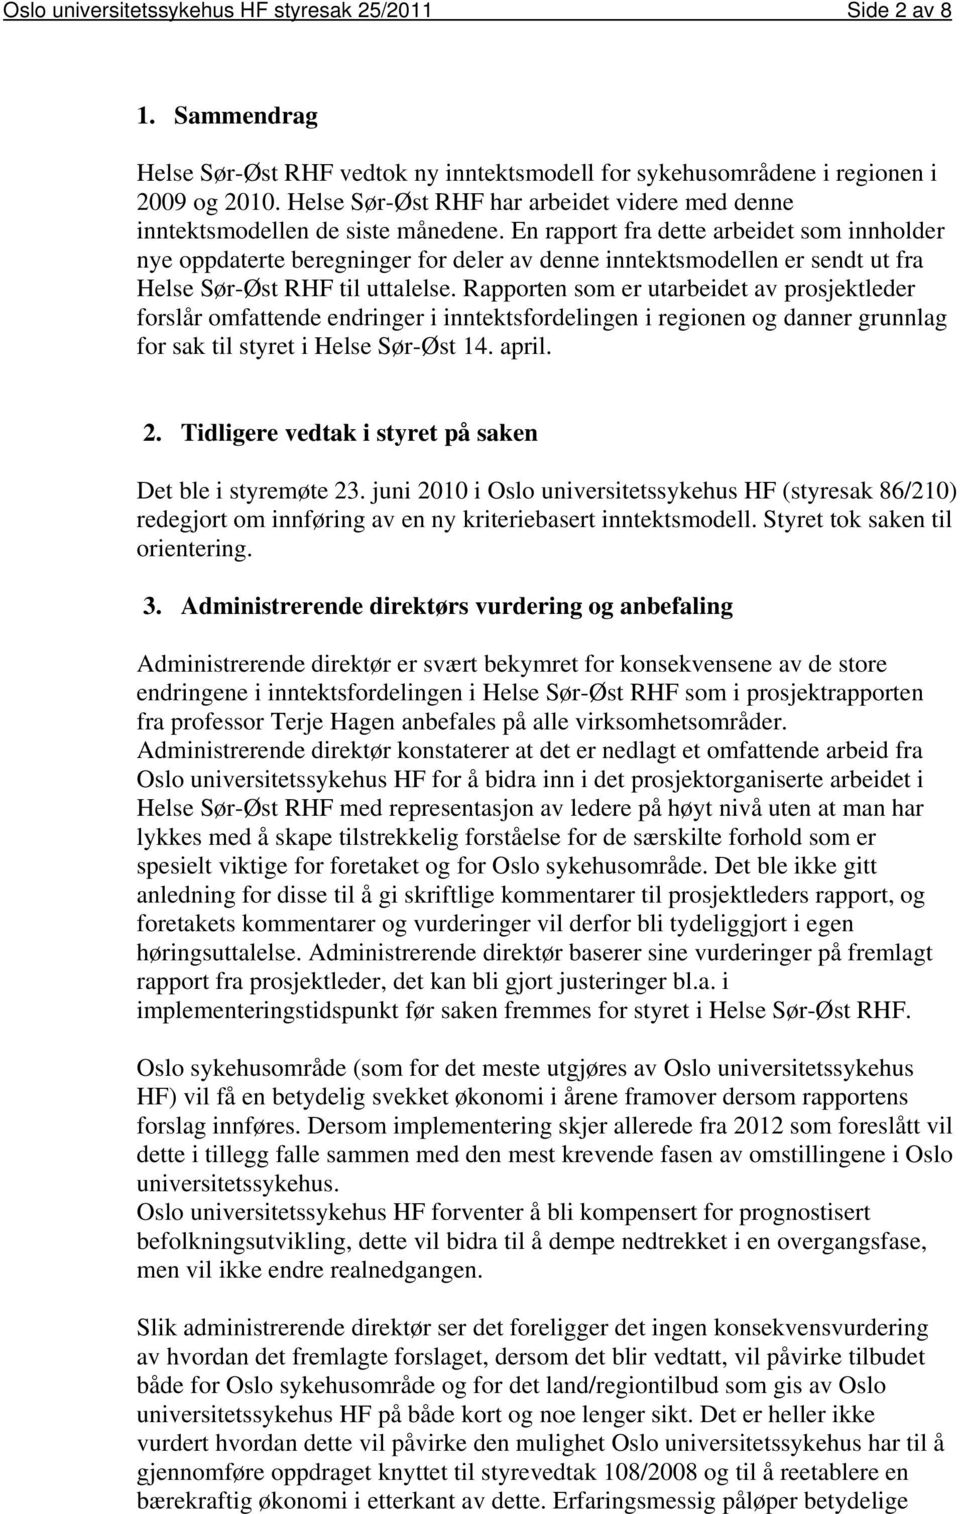 En rapport fra dette arbeidet som innholder nye oppdaterte beregninger for deler av denne inntektsmodellen er sendt ut fra Helse Sør-Øst RHF til uttalelse.